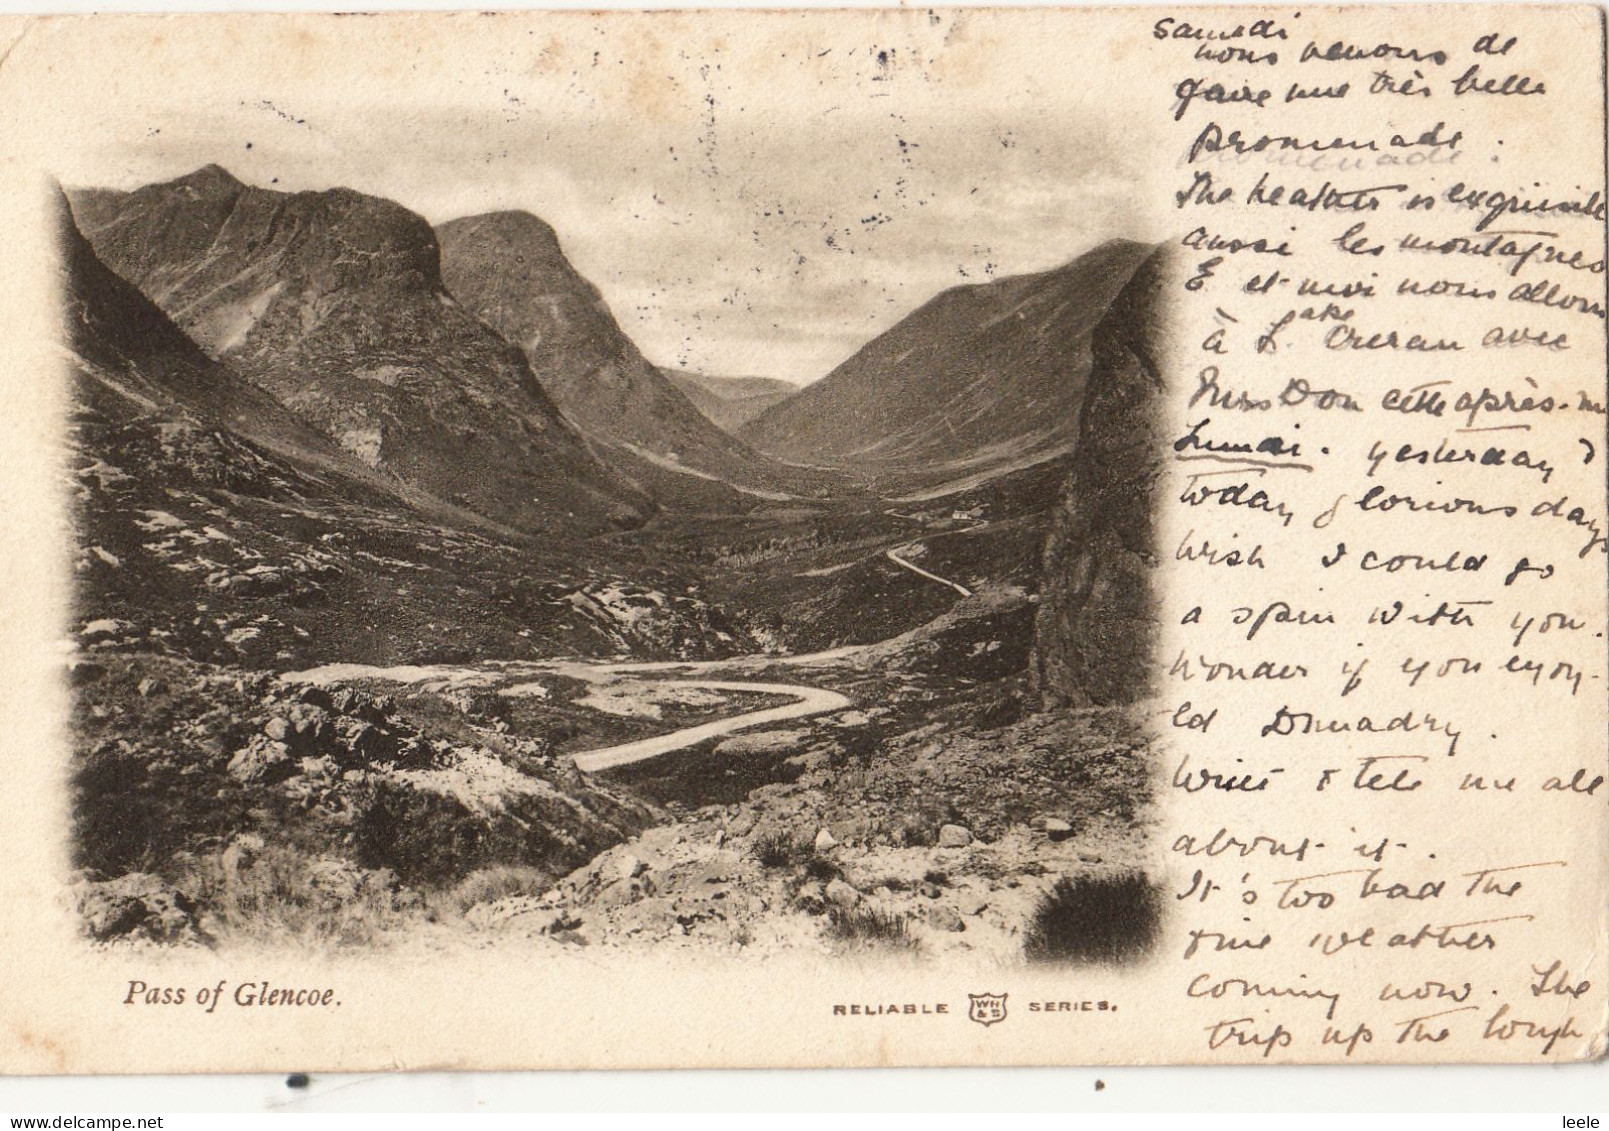 BU29. Antiique Postcard. Pass Of Glencoe. Argyllshire - Argyllshire